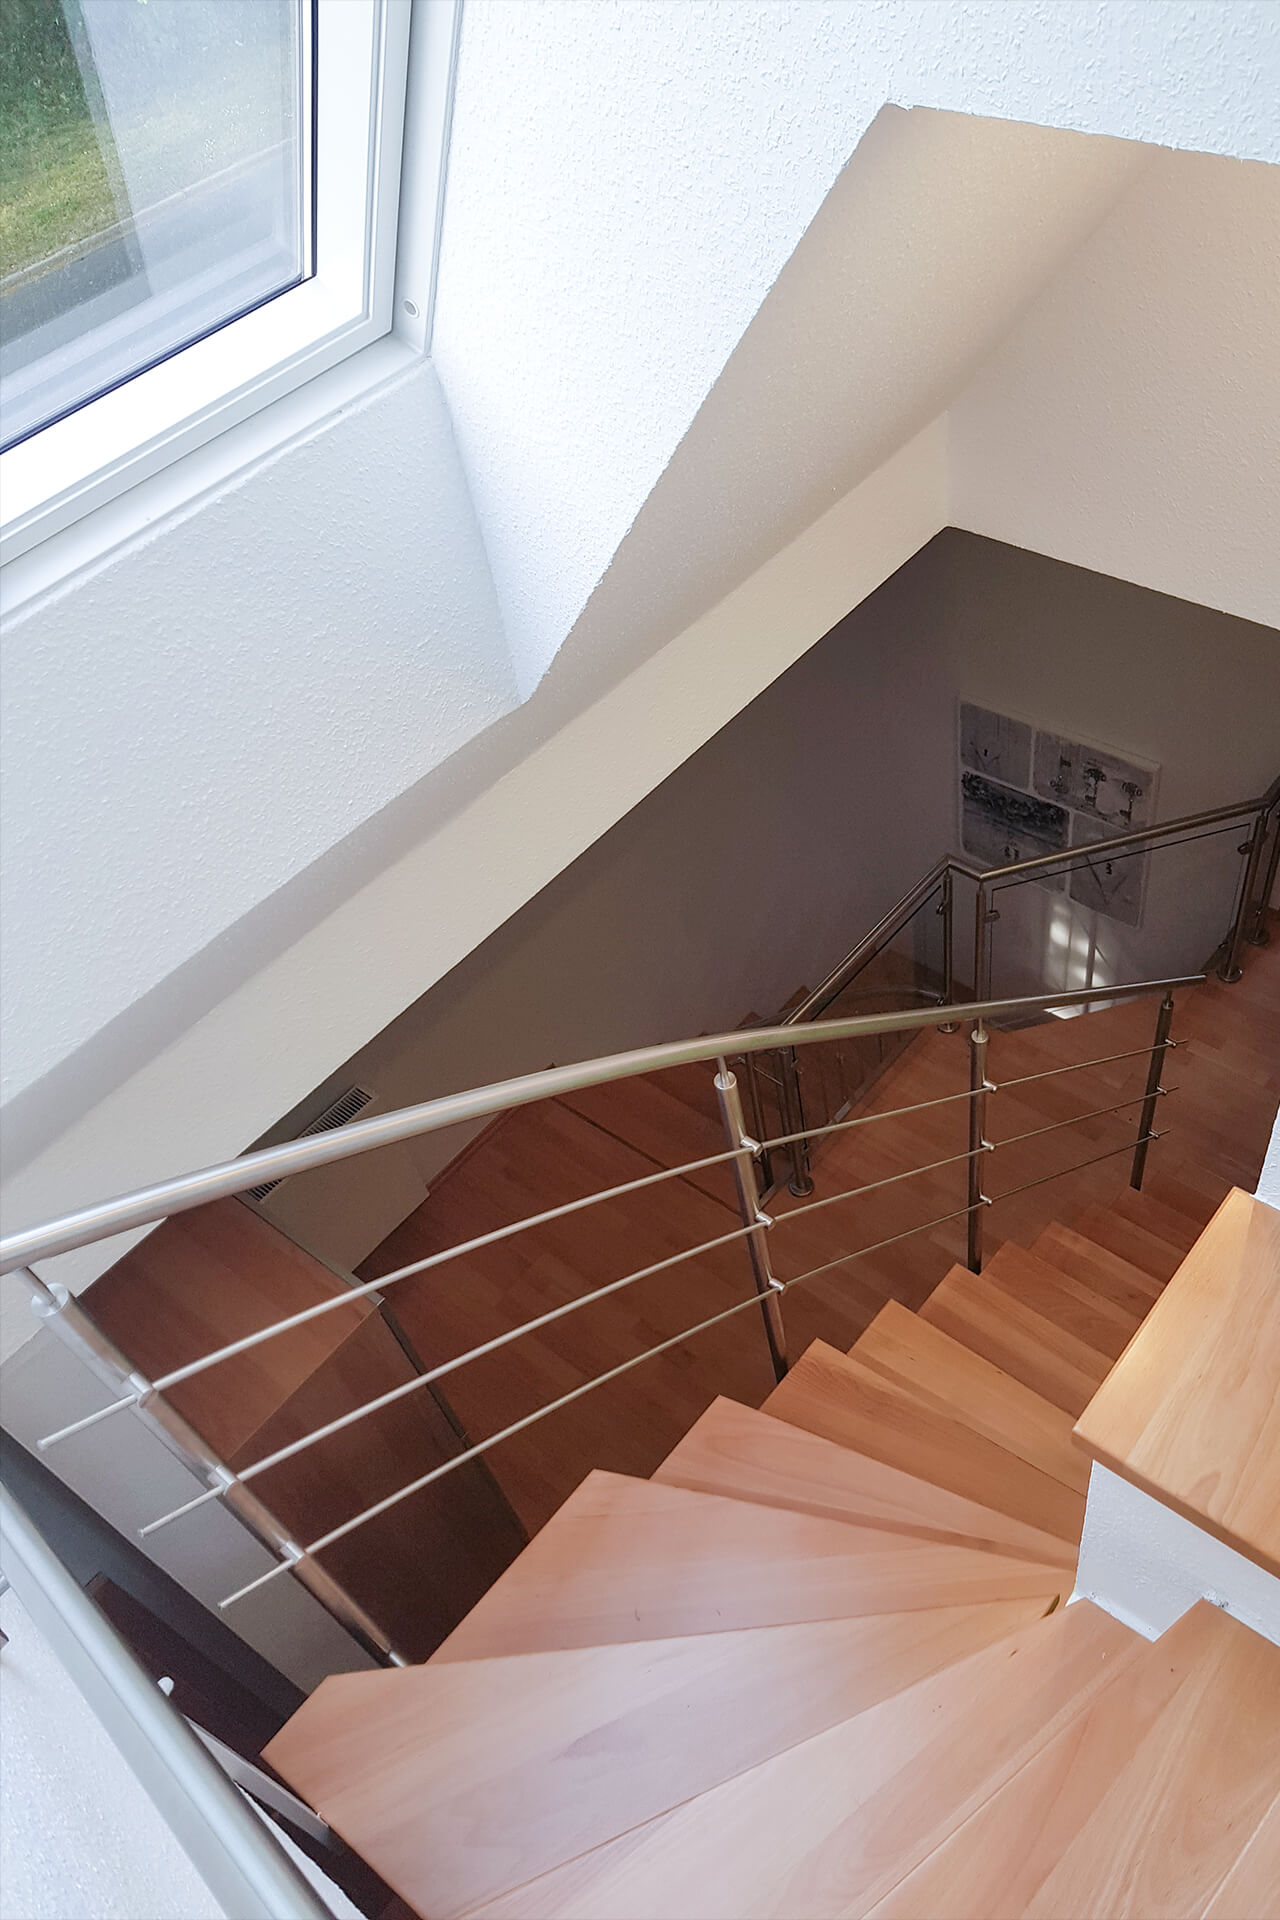 Für ein Mehrfamilienhaus in Mühlheim konzipierte und realisierte die Edelstahlschlosserei Nappenfeld aus Mülheim eine neue, fünfzehnstufige Treppe aus edlem Holz